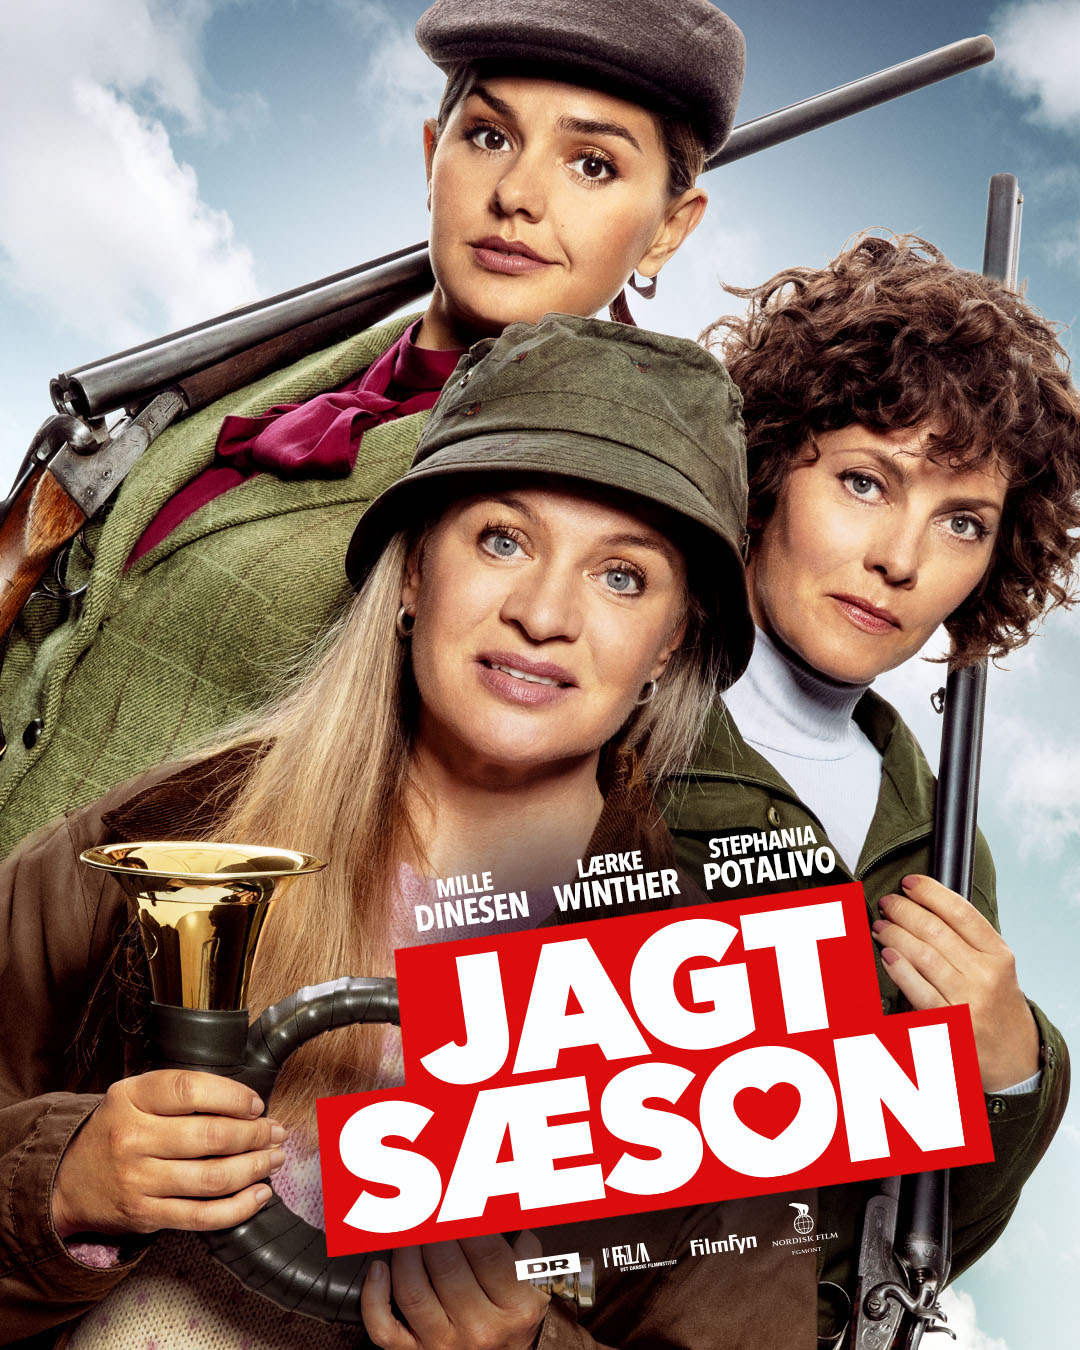 Jagtsæson (2019) постер